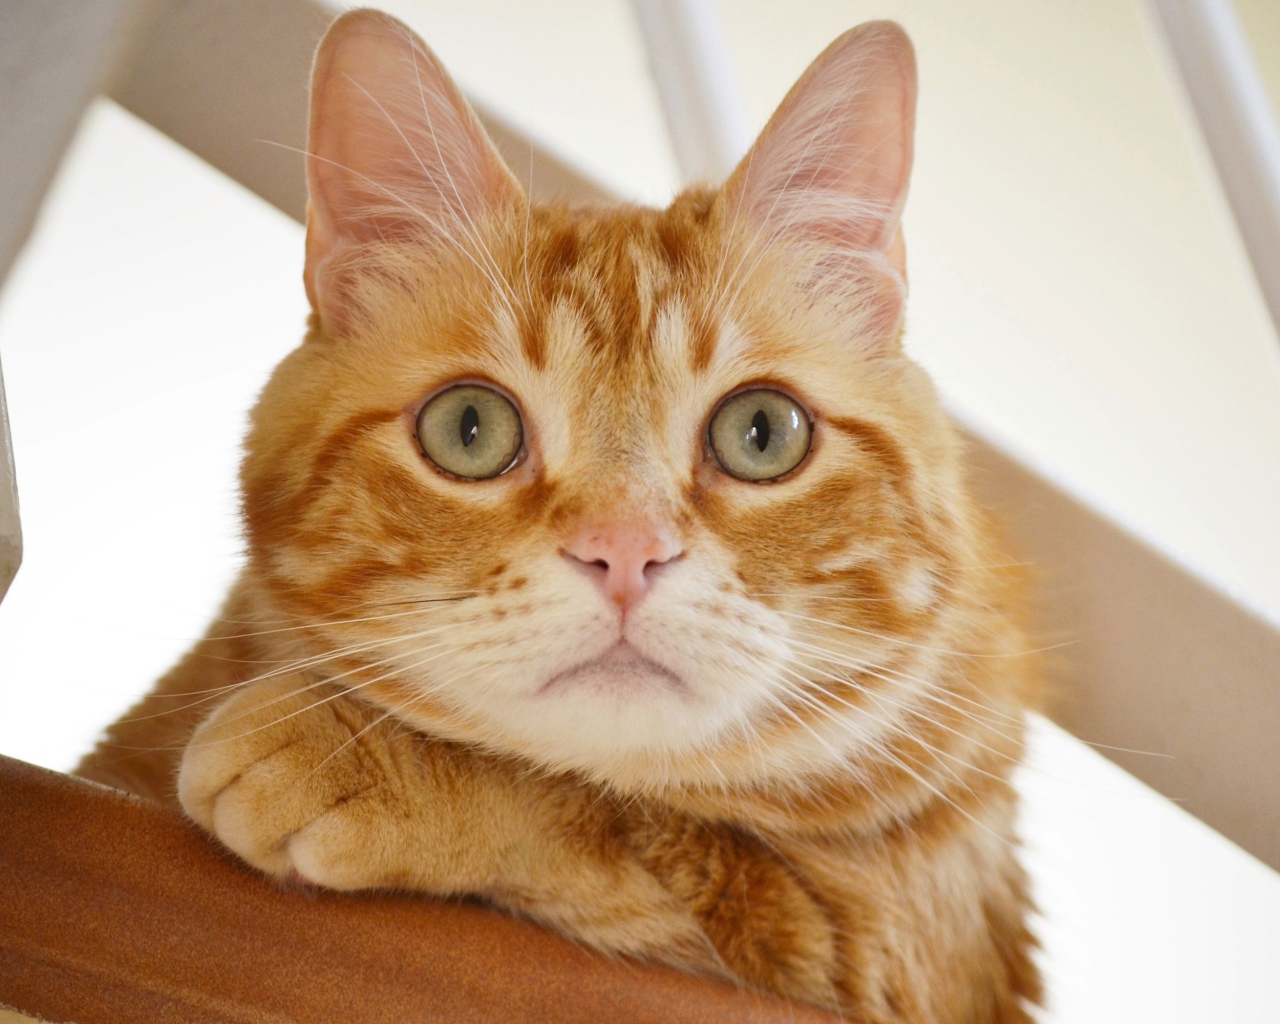 Полосатый рыжий кот смотрит на хозяина